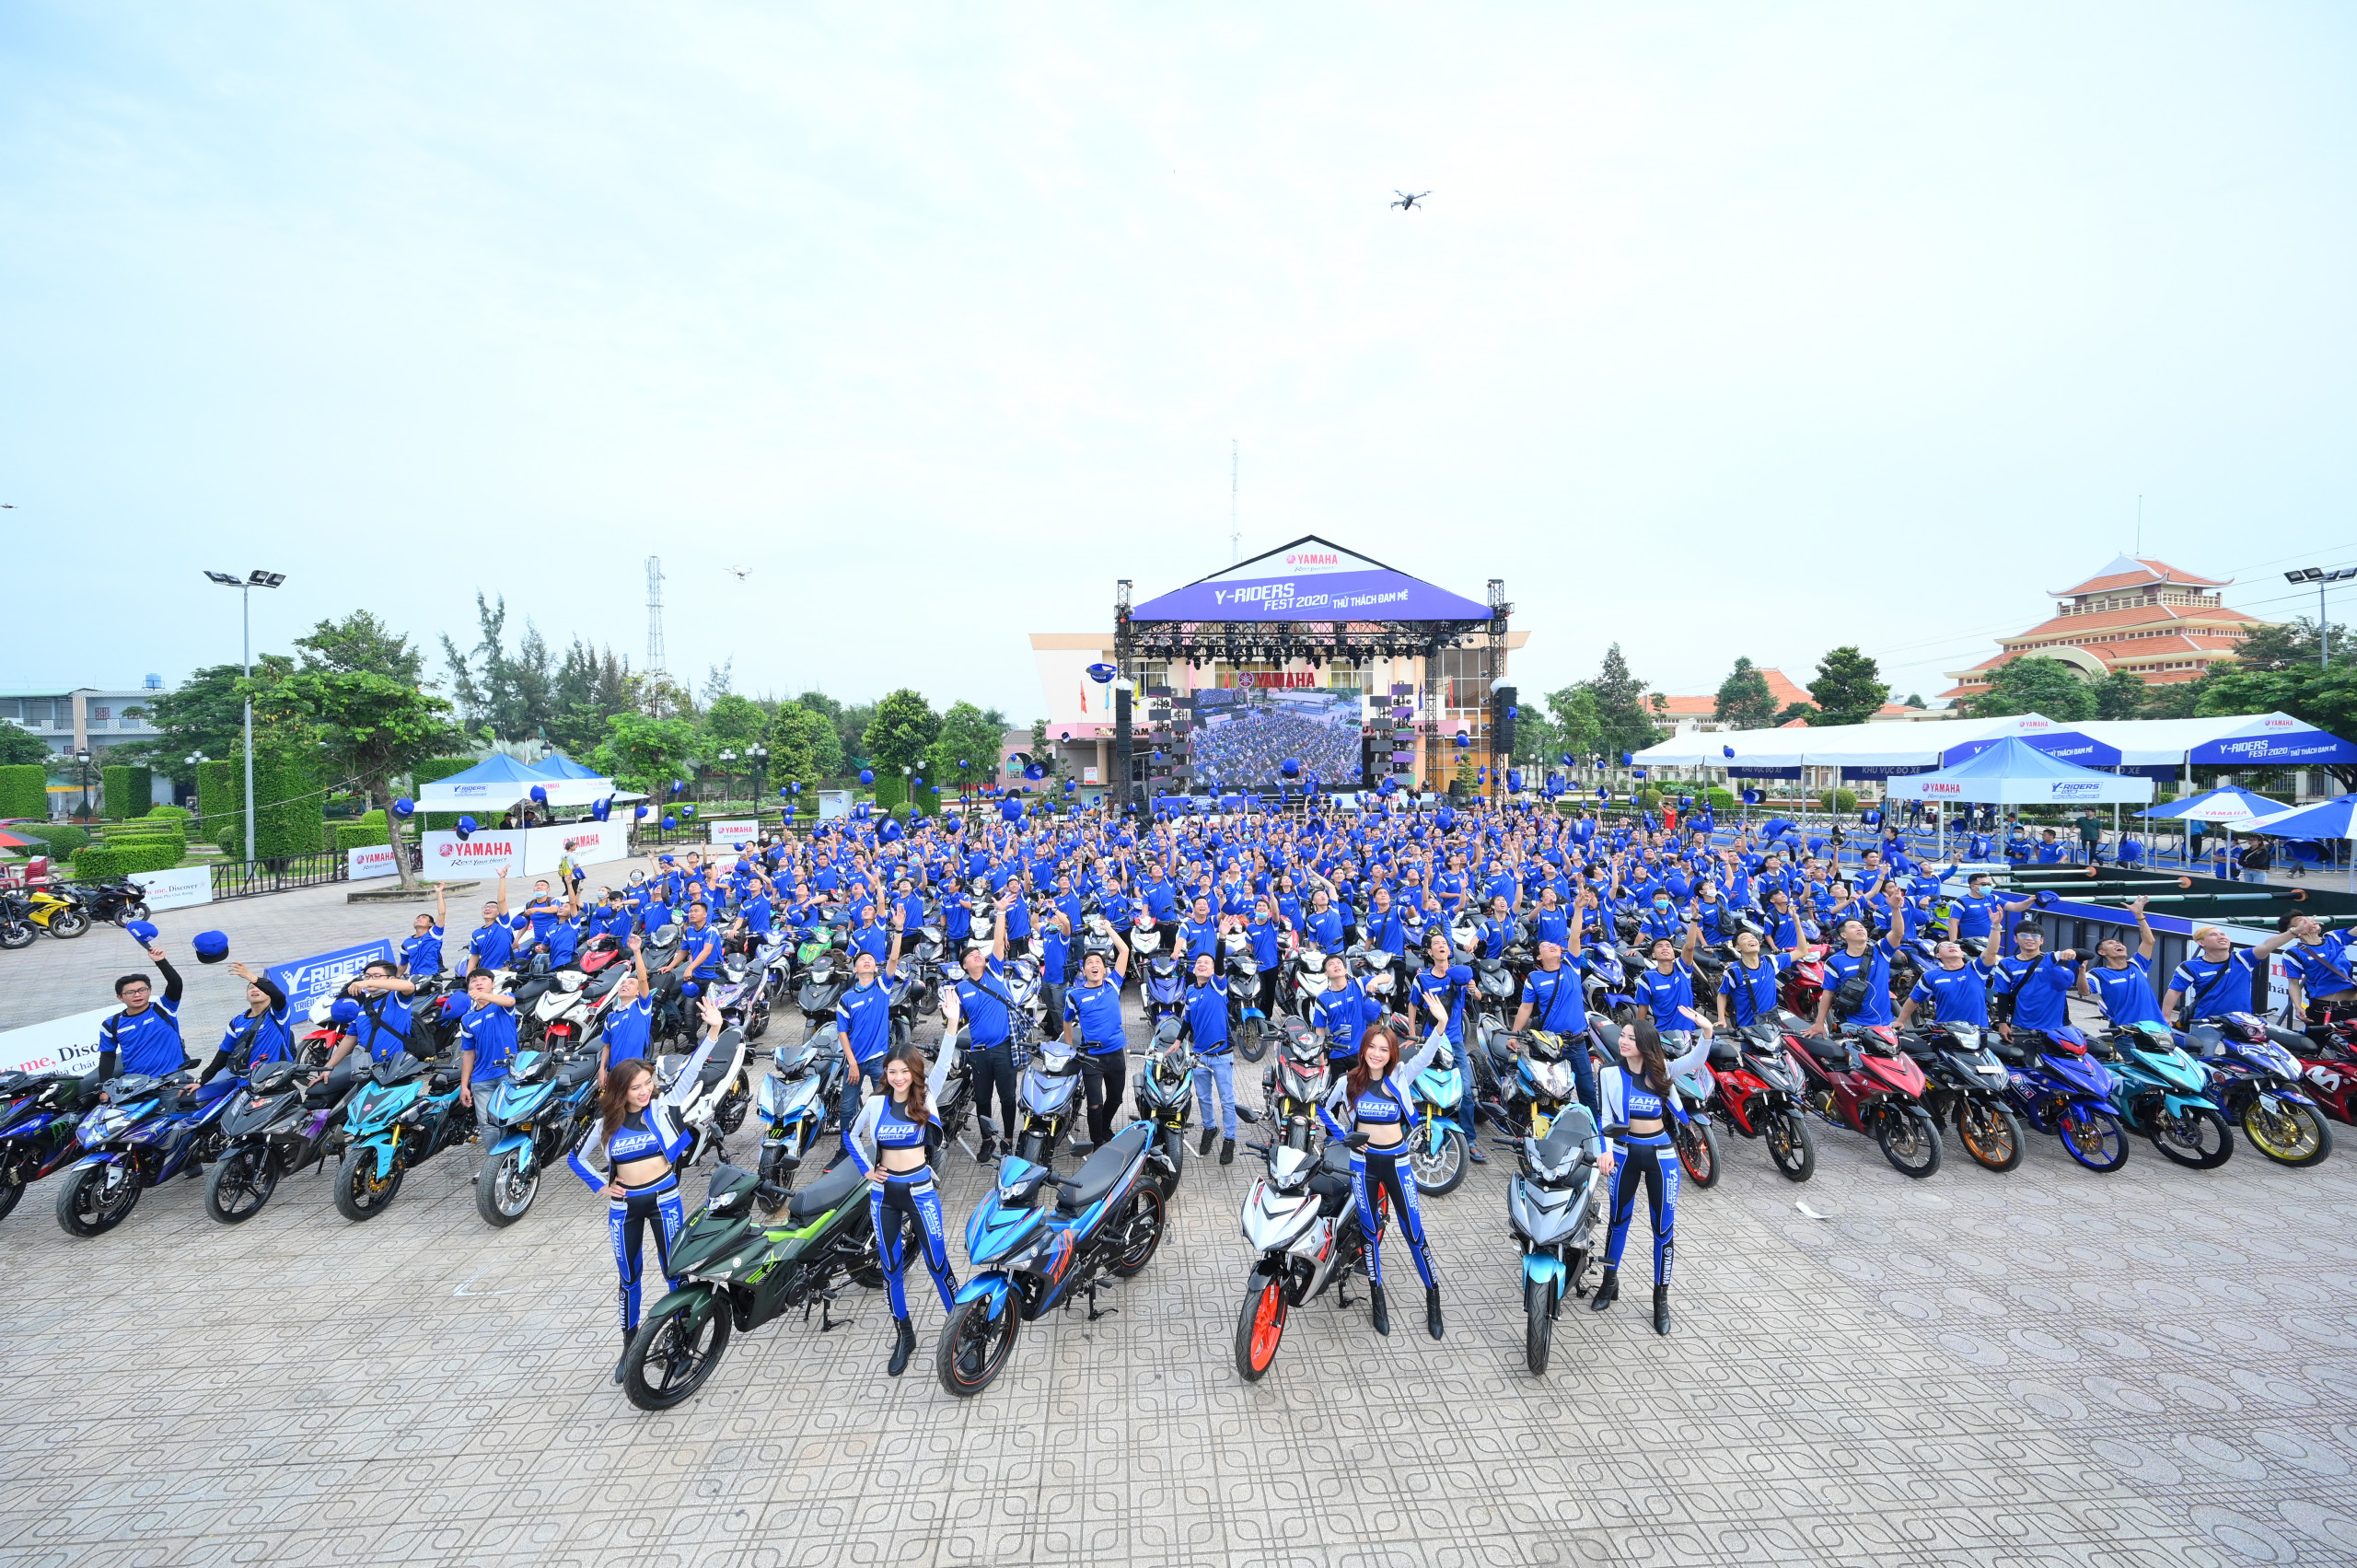 Y-RIDERS FEST 2020: NƠI THỔI BÙNG ĐAM MÊ CỦA TÍN ĐỒ YÊU XE CÙNG SỰ RA MẮT  ẤN TƯỢNG CỦA EXCITER PHIÊN BẢN MỚI - Yamaha Motor Việt Nam